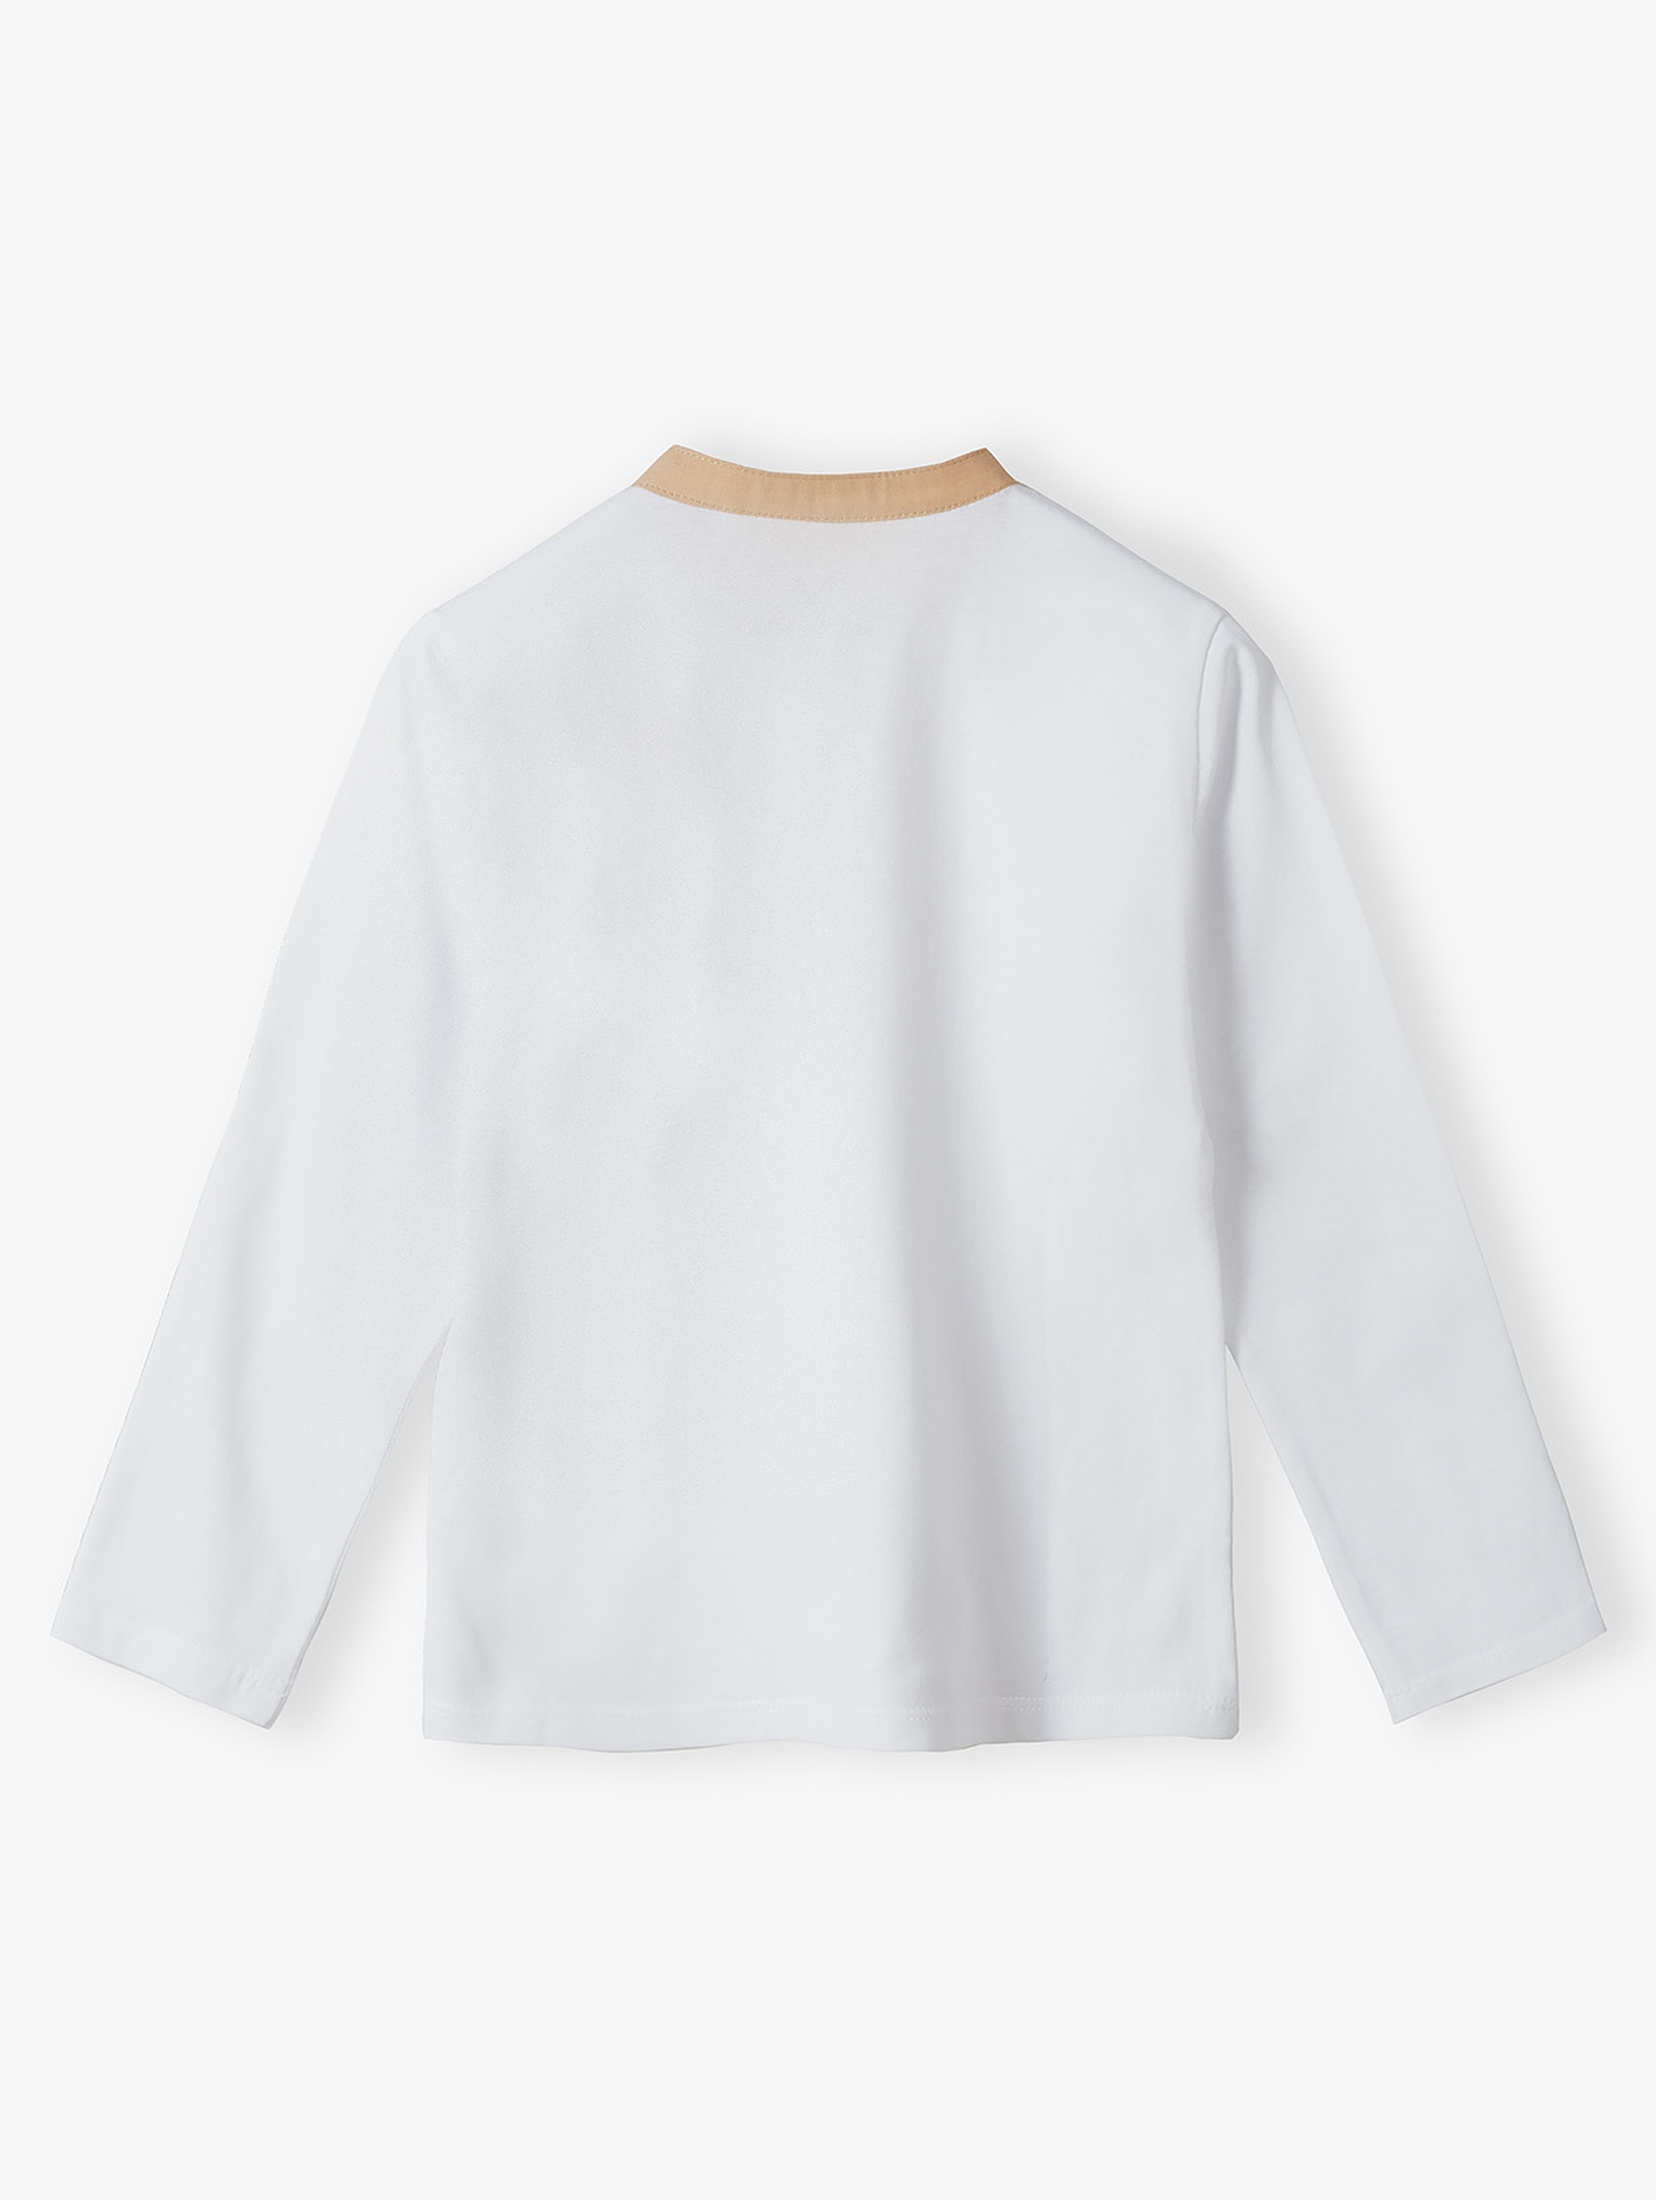 Biała elegancka bluzka chłopięca z długim rękawem z bawełny